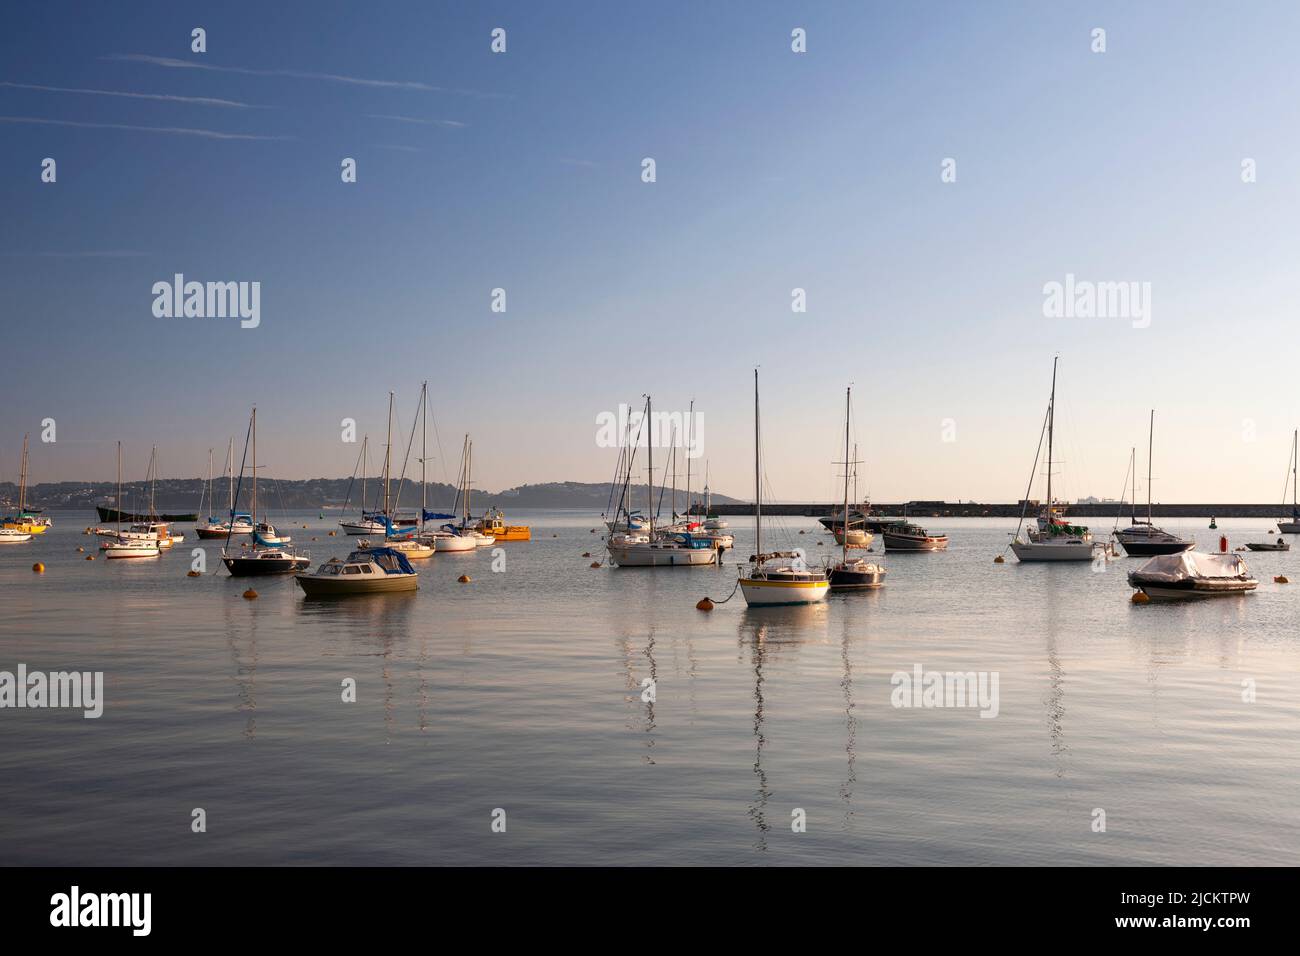 UK, England, Devon, Torbay, Brixham Marina with Moored Yachts Stock Photo